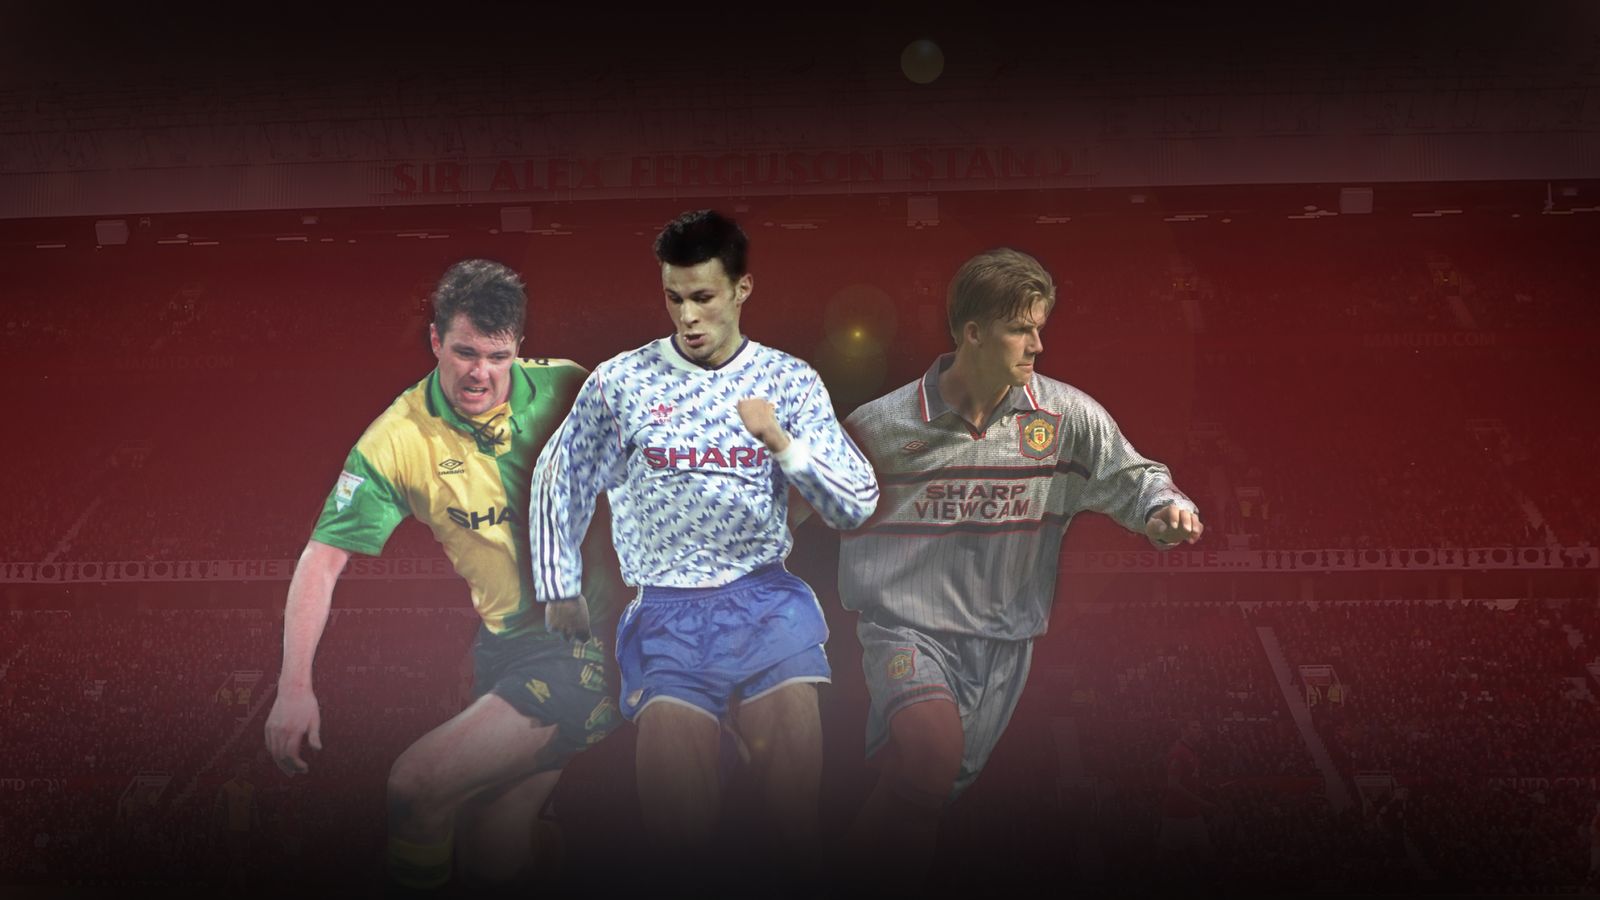 Manchester United 1990-1992 Premier League Retro Jersey - Retro